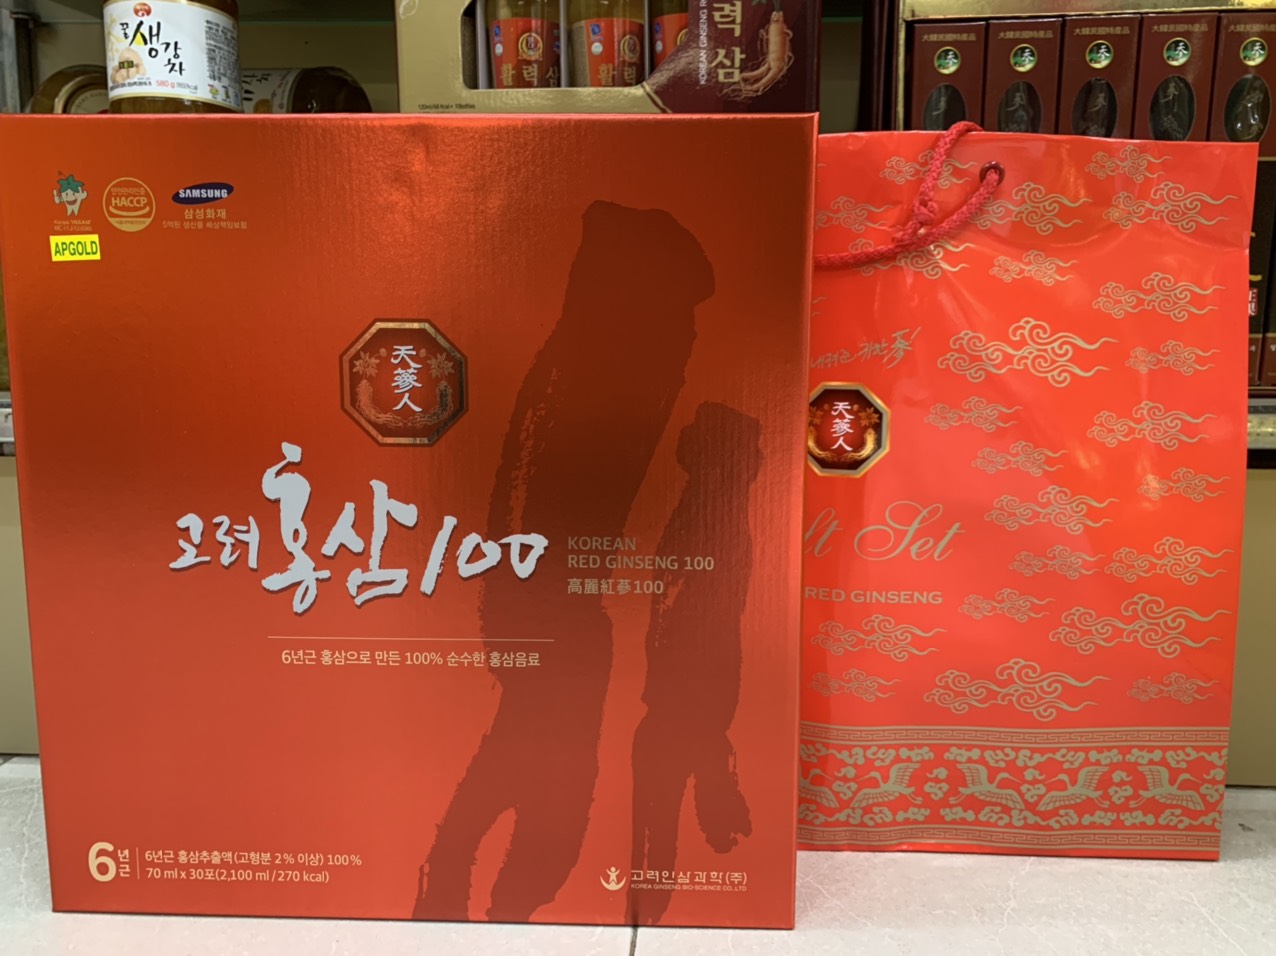 Tinh Chất Hồng Sâm BIO Hàn Quốc Nguyên Chất 100% Korean Red Ginseng 